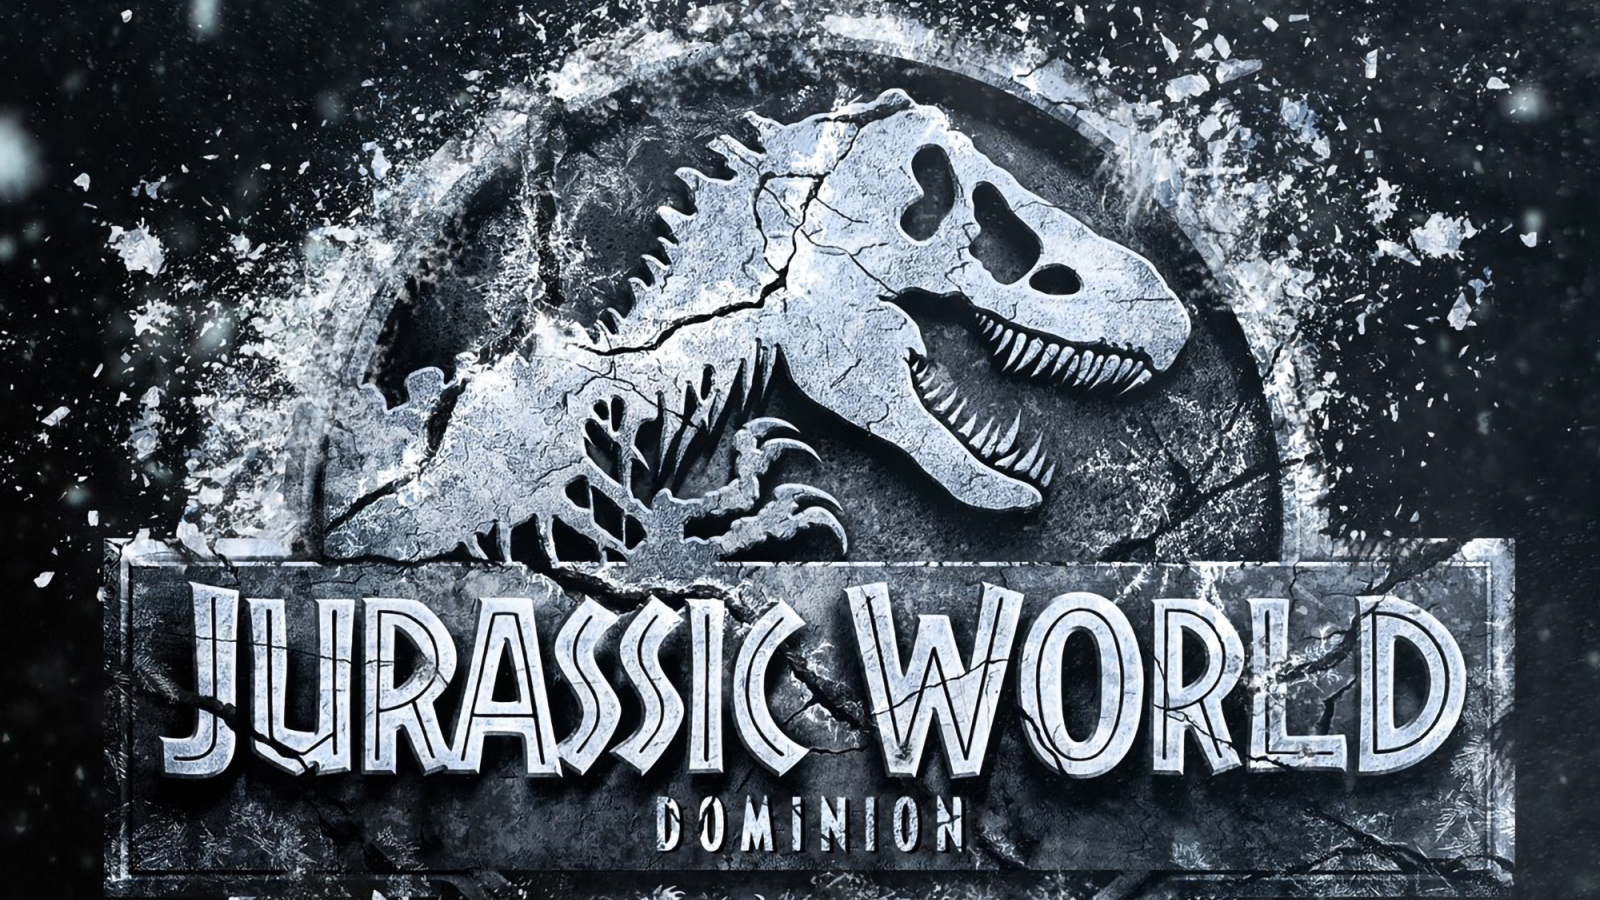 1600x900 Jurassic World 3 Dominion Fan Art 1600x900 Resolution